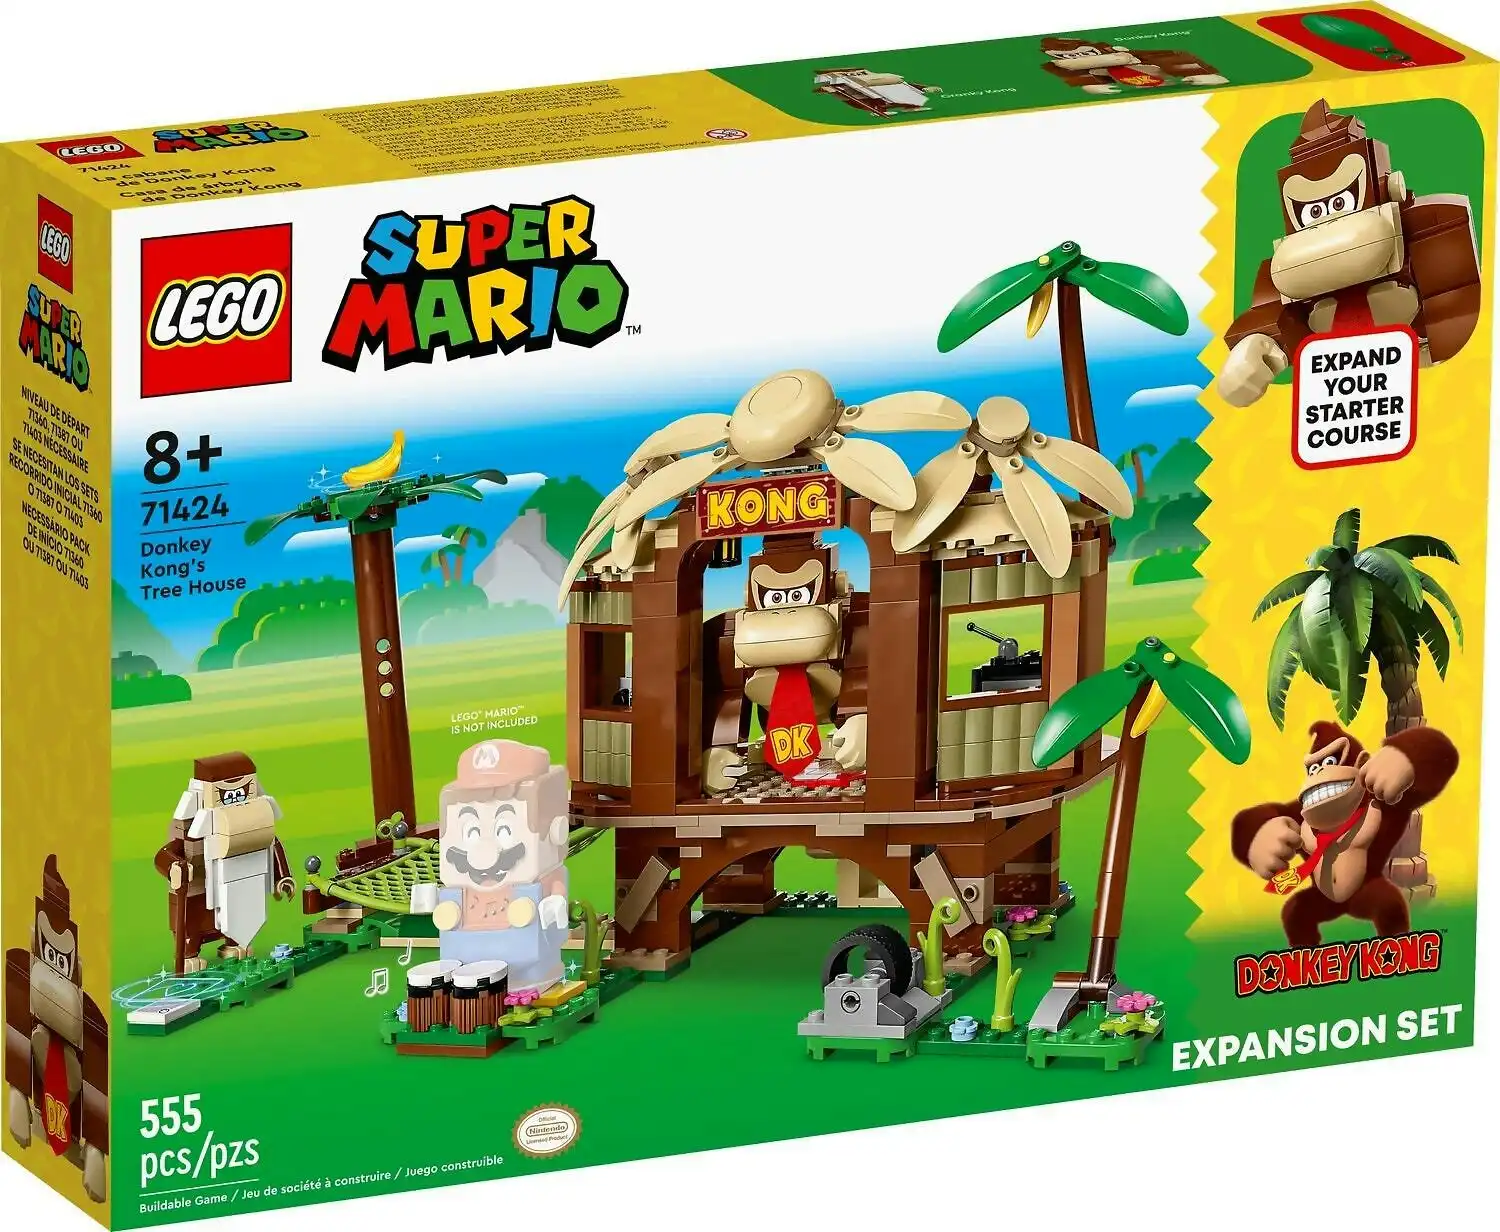 LEGO 71424 Donkey Kong's Tree House Expansion Set - Super Mario